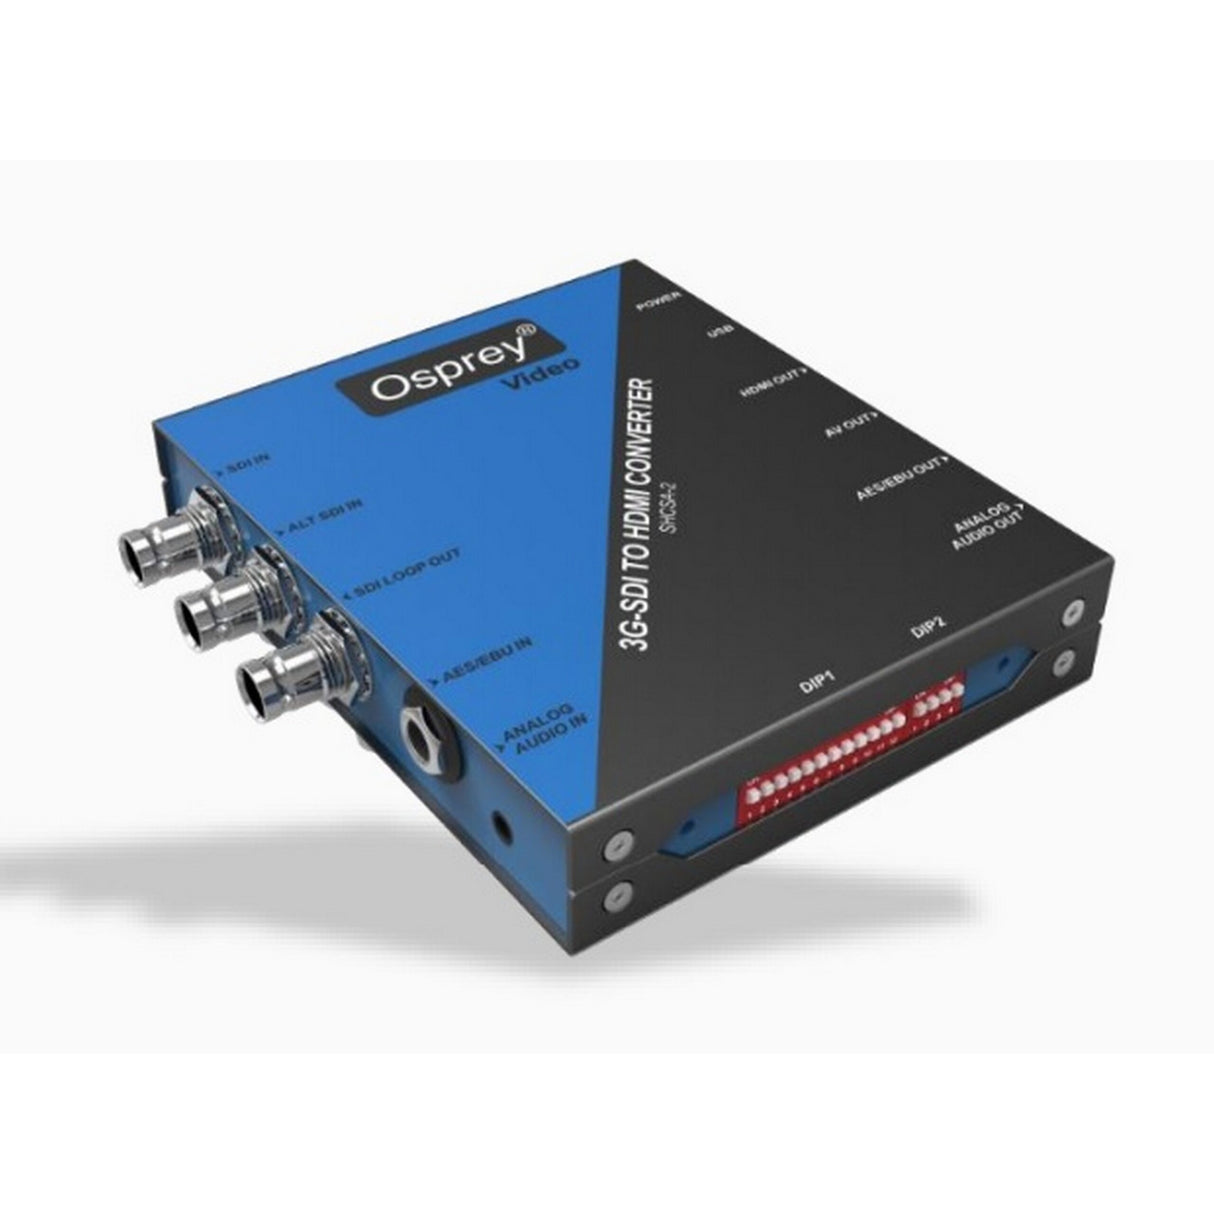 Osprey Video SHCSA-2 Scaling SDI to HDMI Converter